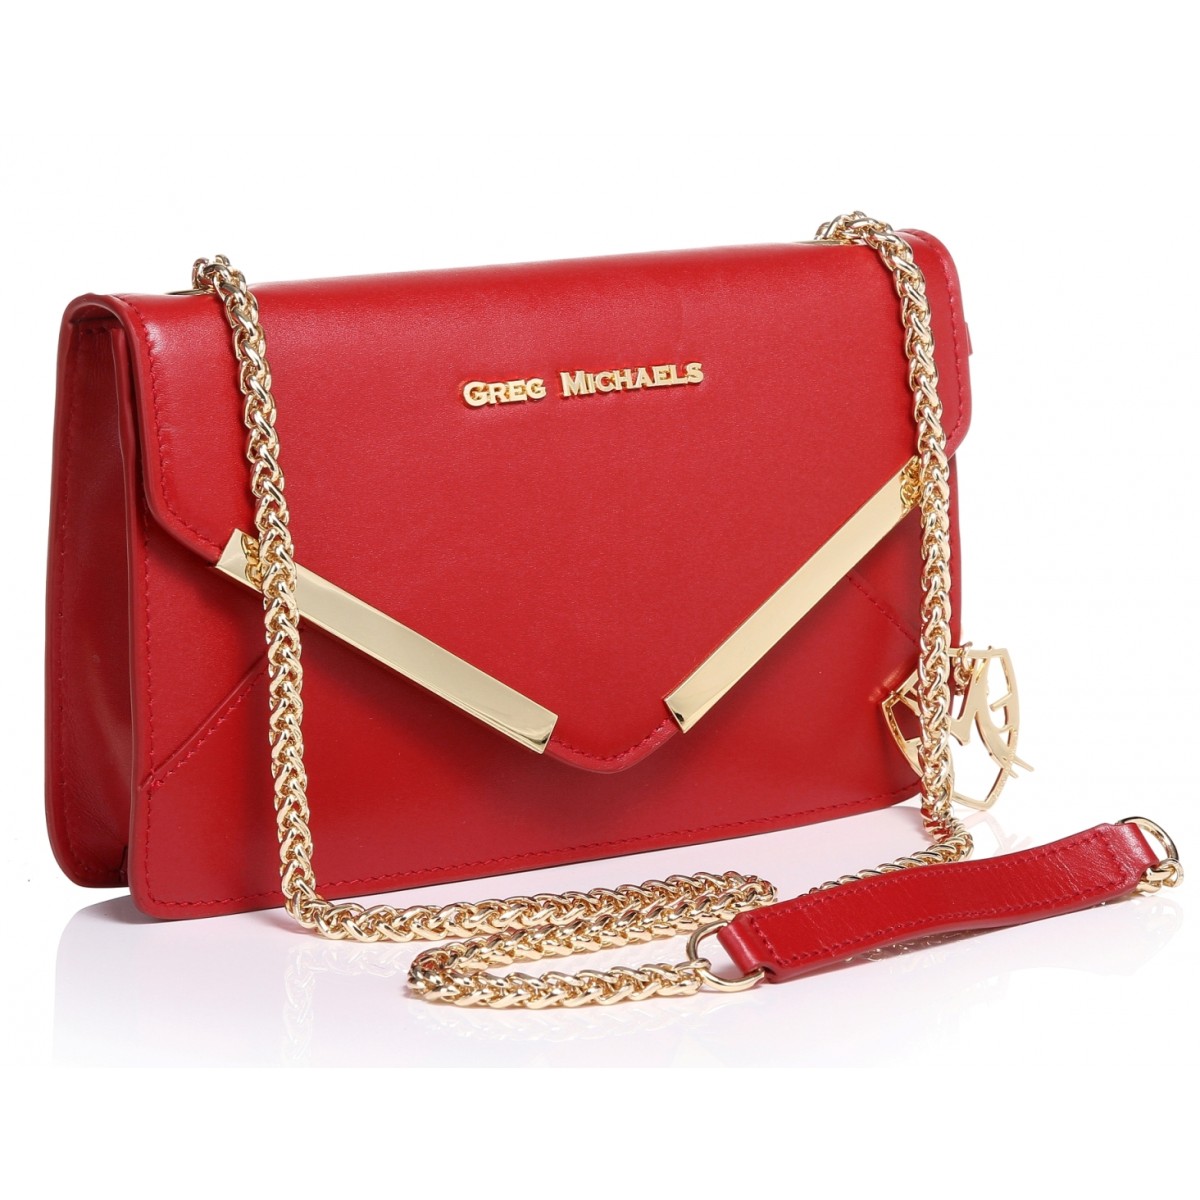 greg-michaels-rebecca-in-red-envelope-style-handbag